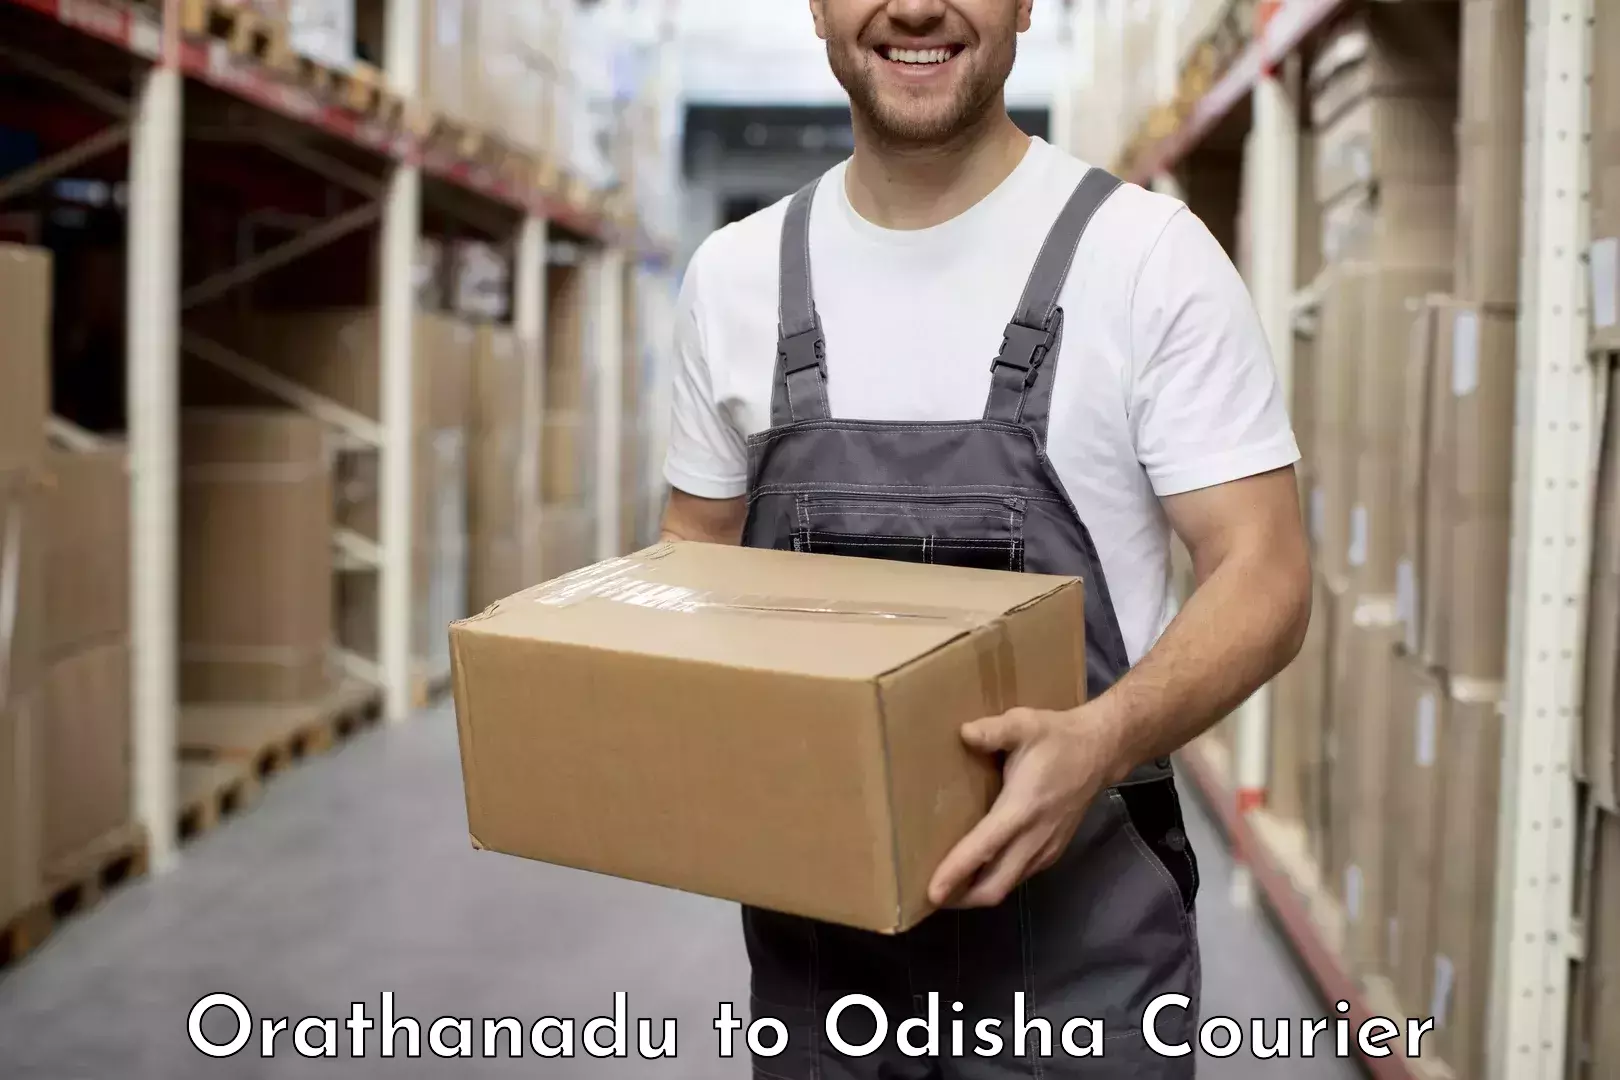 On-call courier service Orathanadu to Kishorenagar